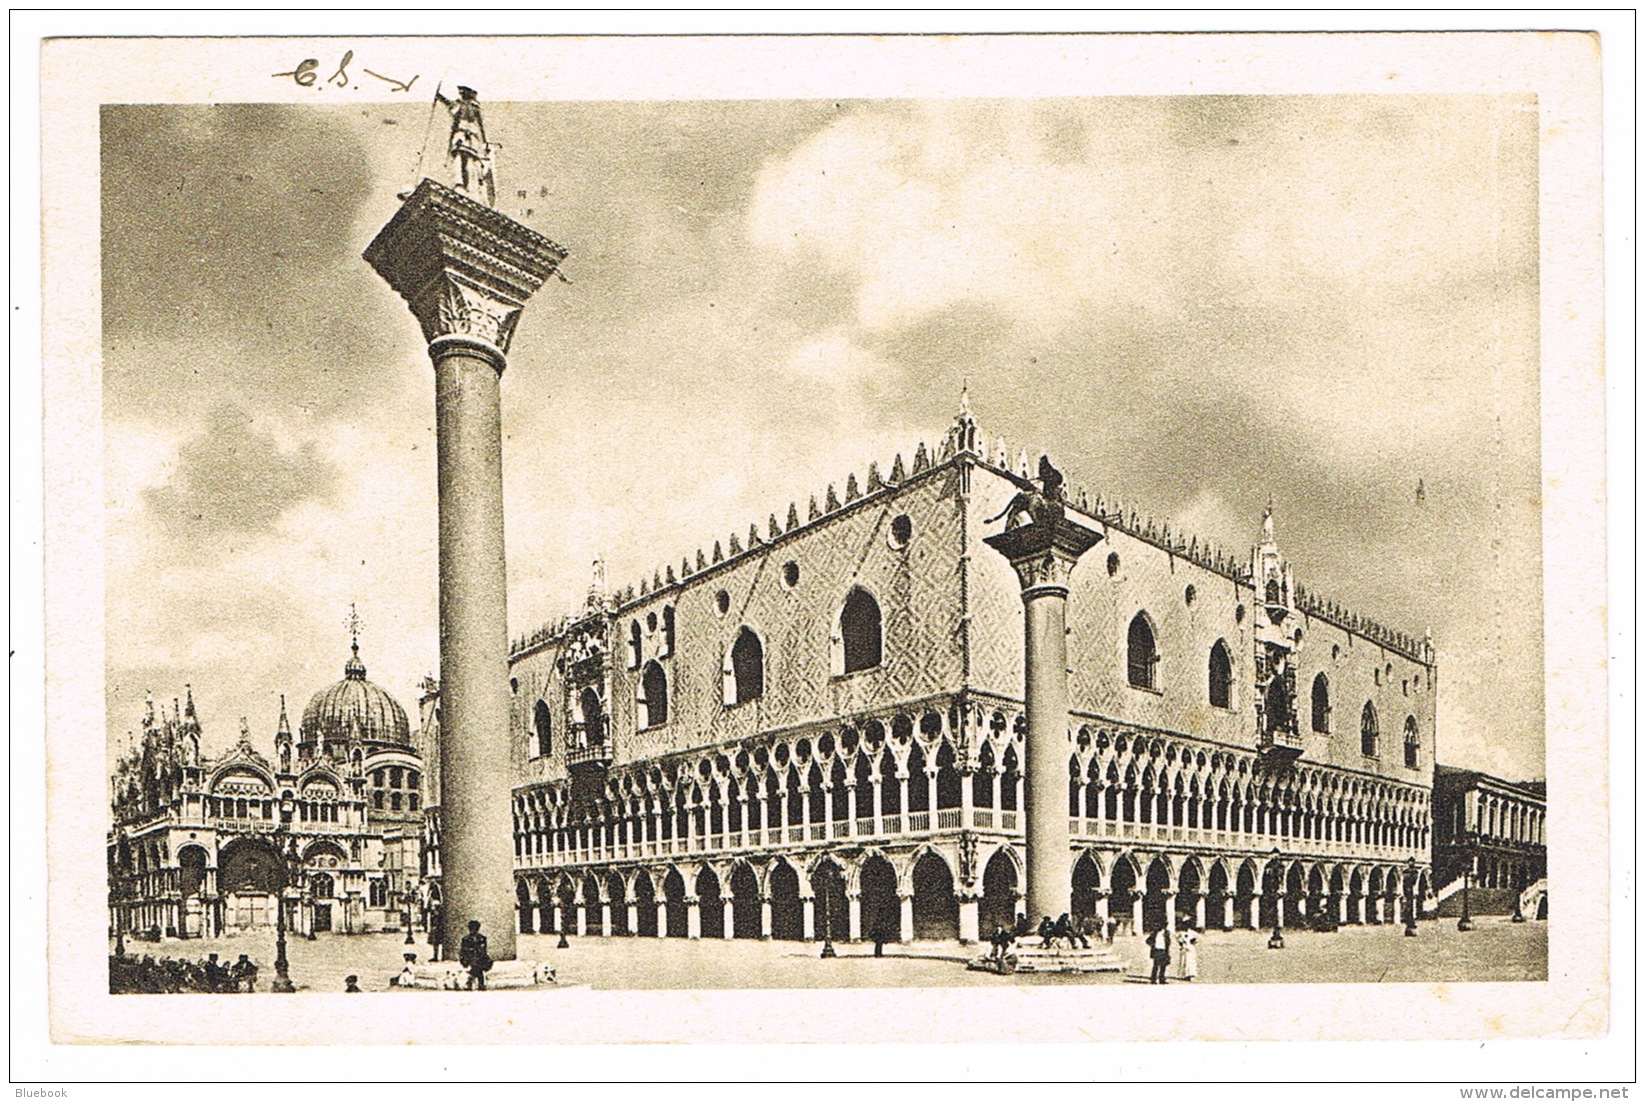 RB 1166 - 1930 Postcard Venezia Italy To London Superb Parcel Post Slogan Postmark - Publicité